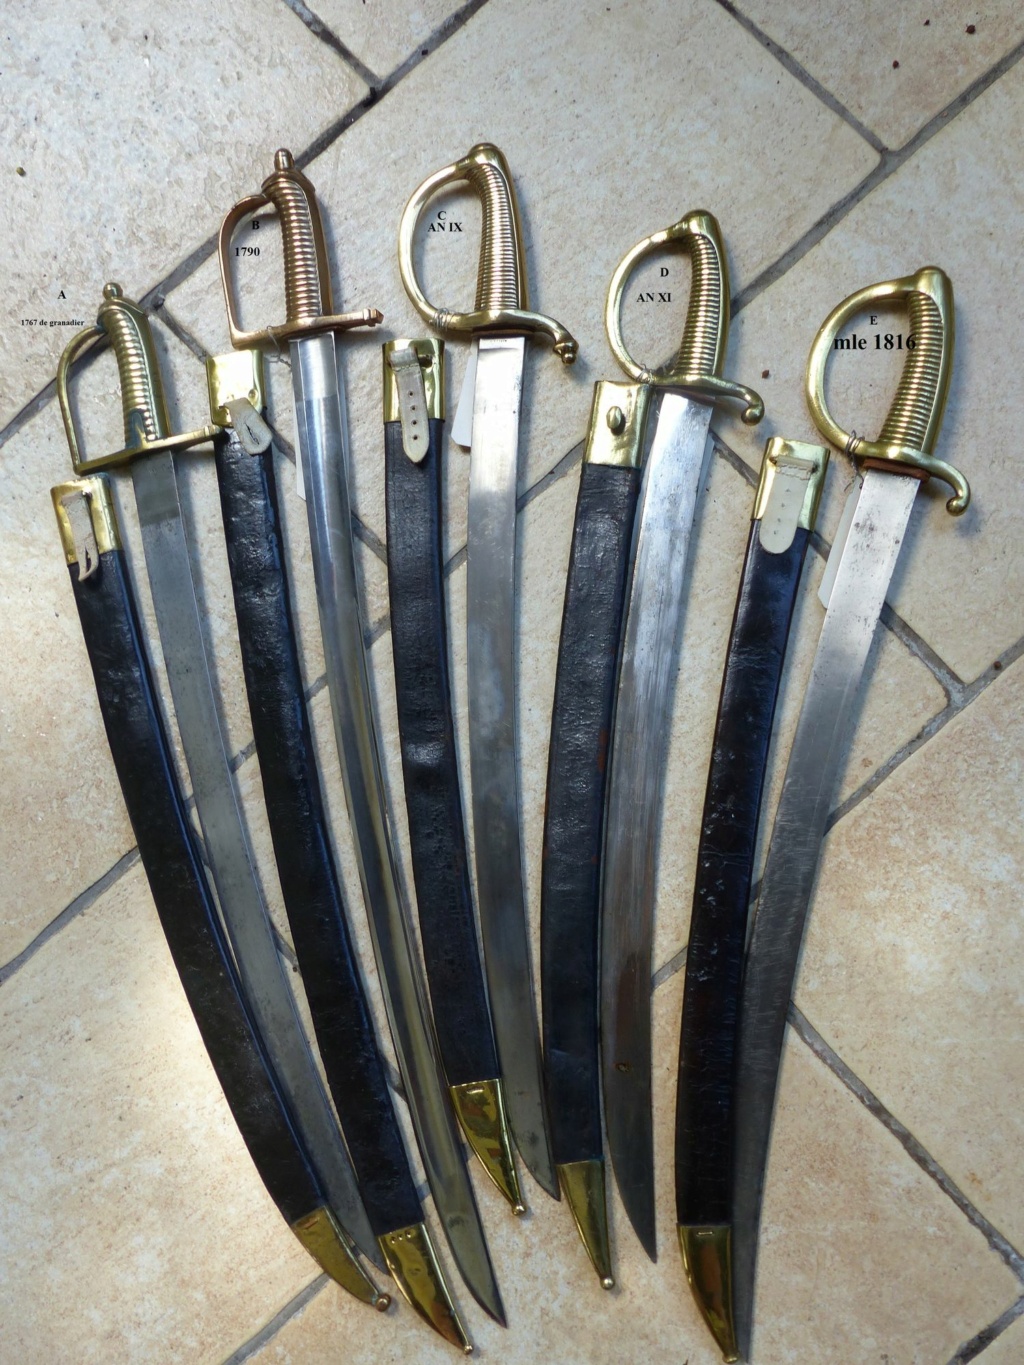 Les sabres briquets 1ère partie : les modèles 1767 et 1790 - Page 2 P1120435